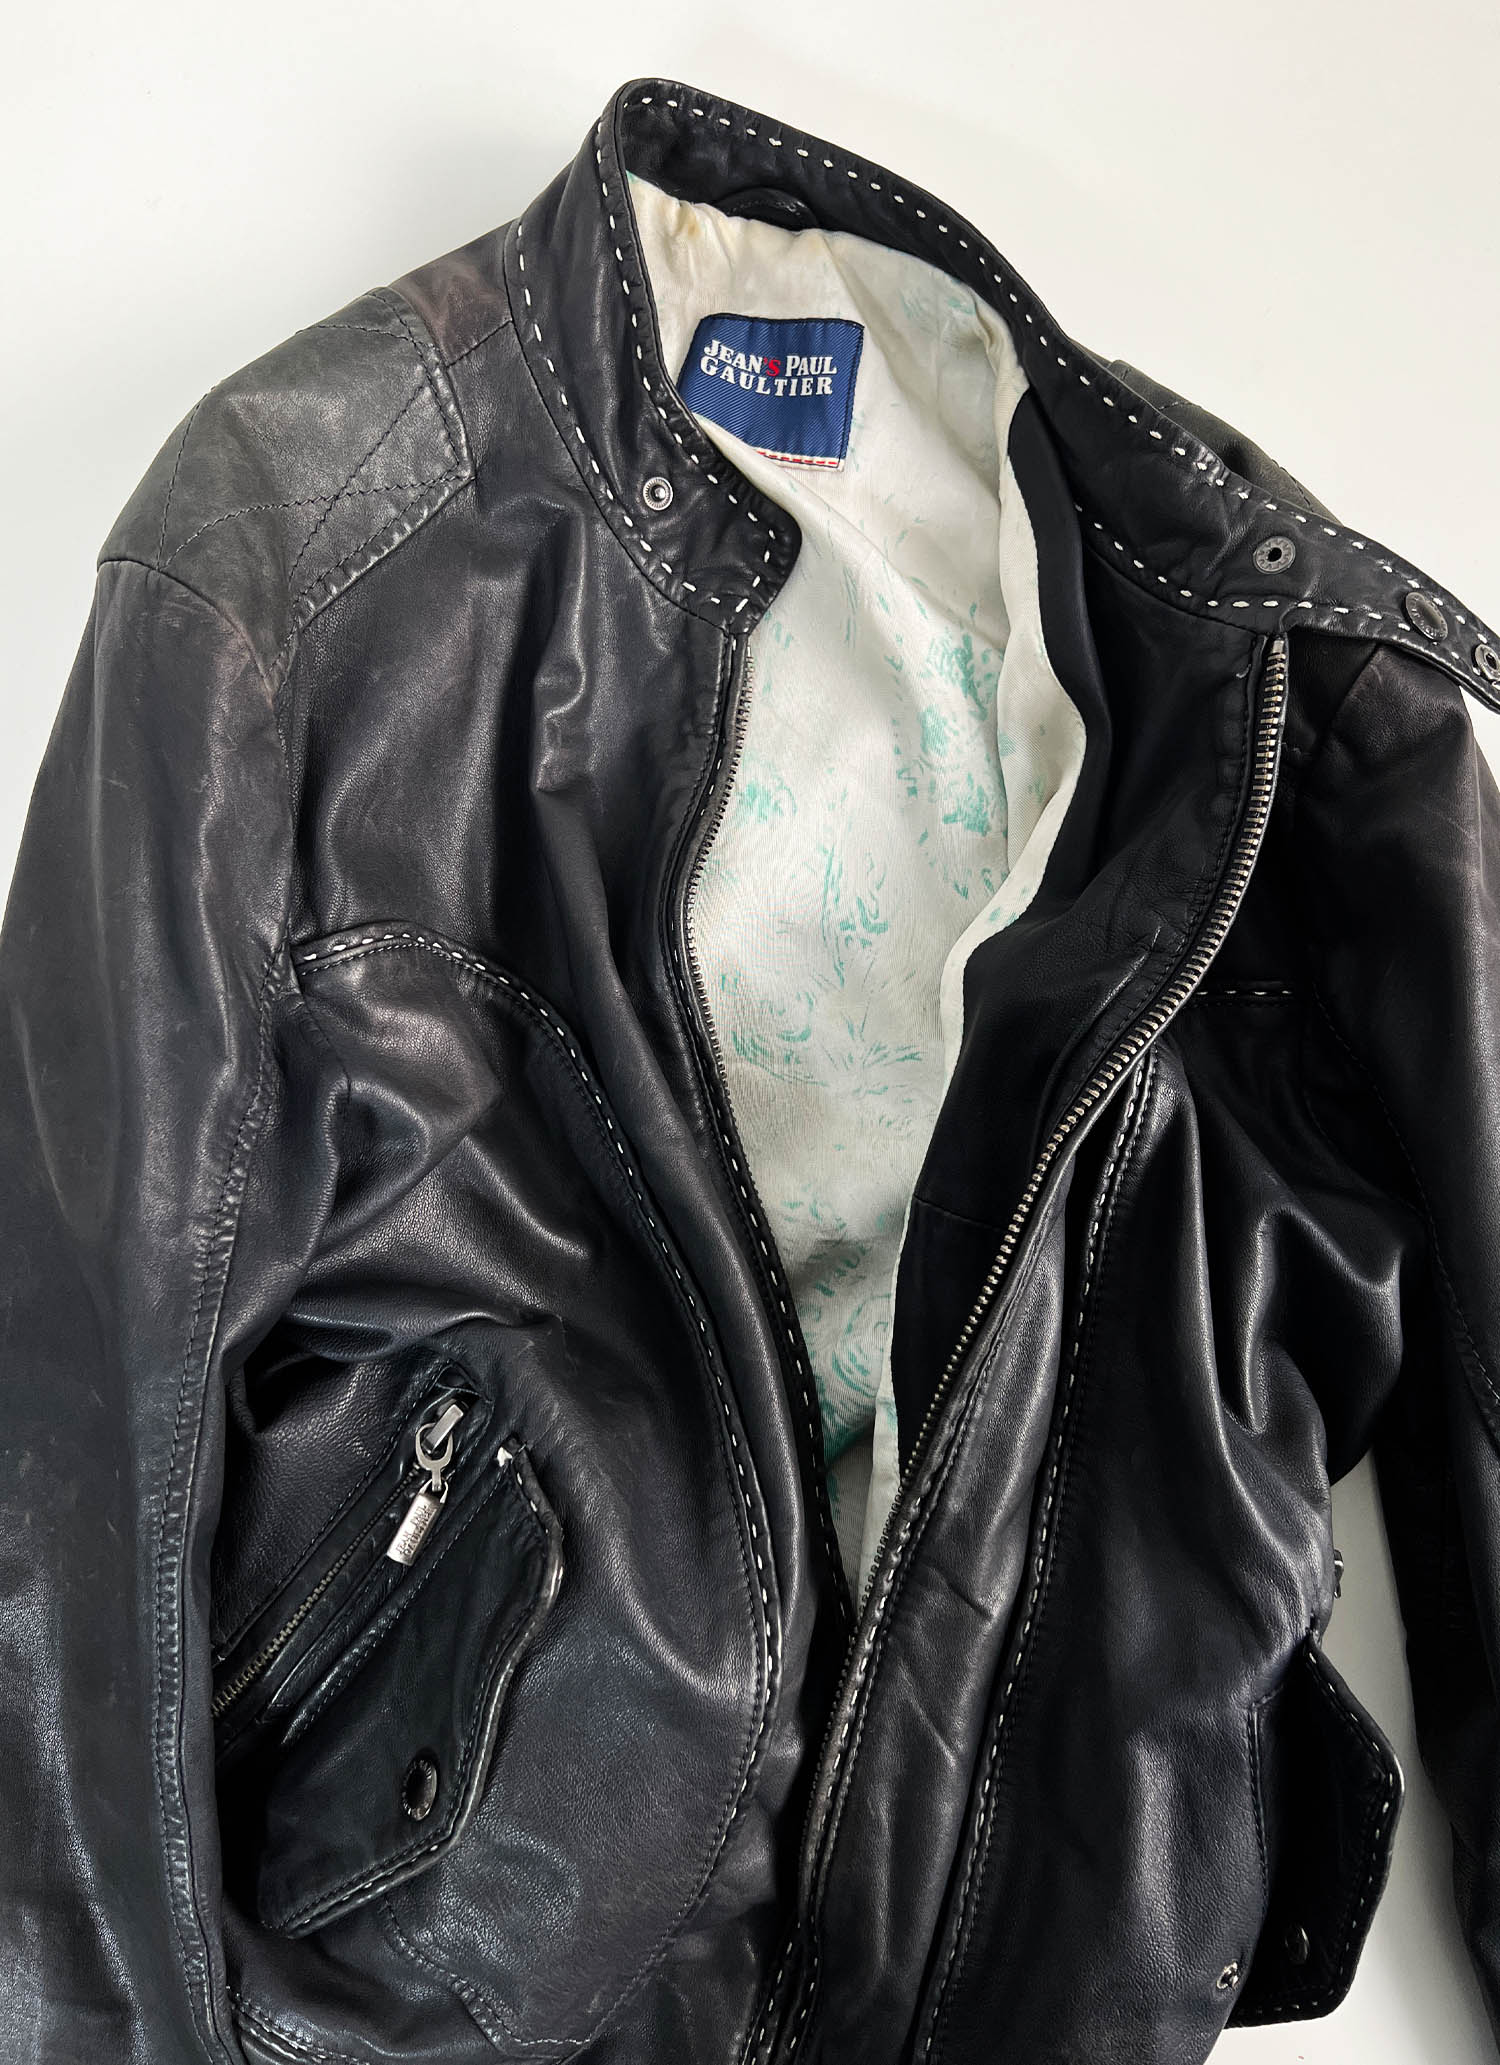 Jean Paul Gaultier stich leather jacket